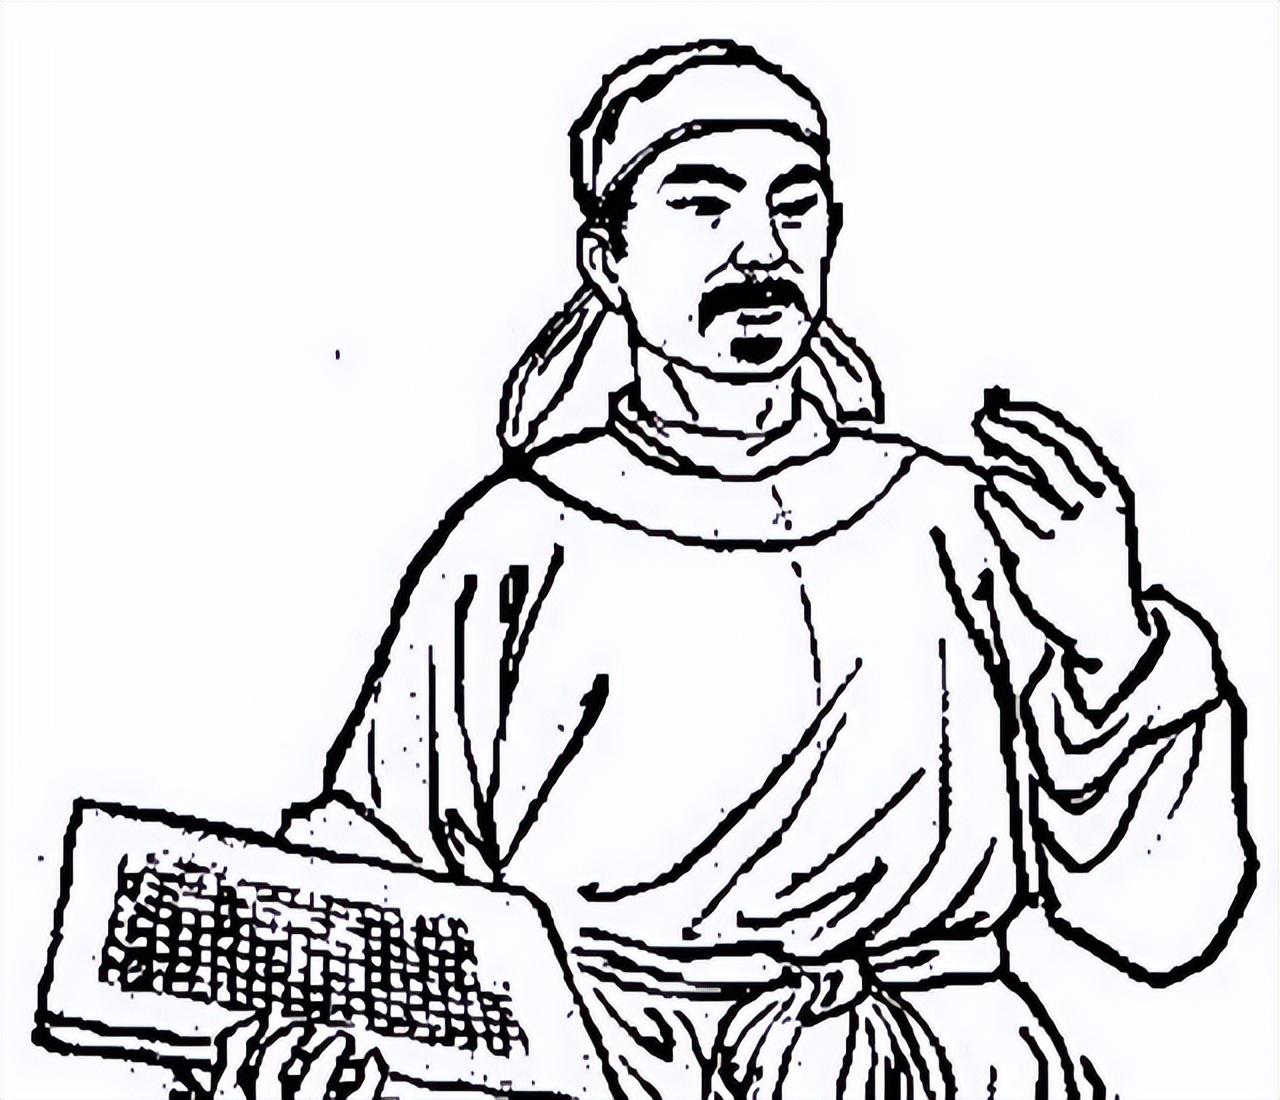 《梦溪笔谈》,书中说:毕昇在北宋庆历年间(1041